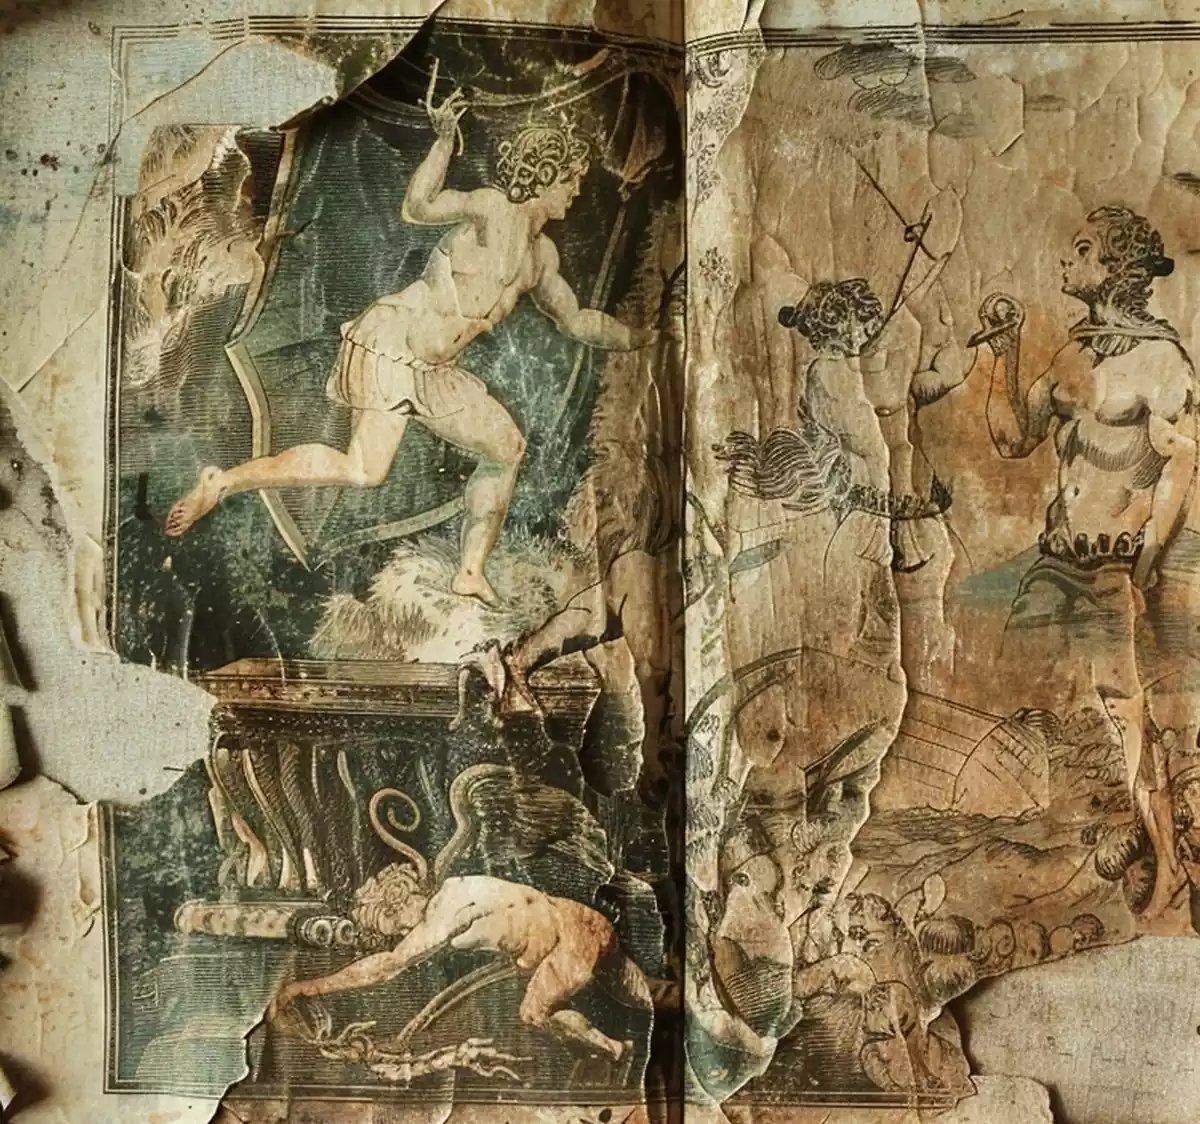 Οι 5 Εποχές της Ανθρωπότητας σύμφωνα με την αρχαία ελληνική μυθολογία